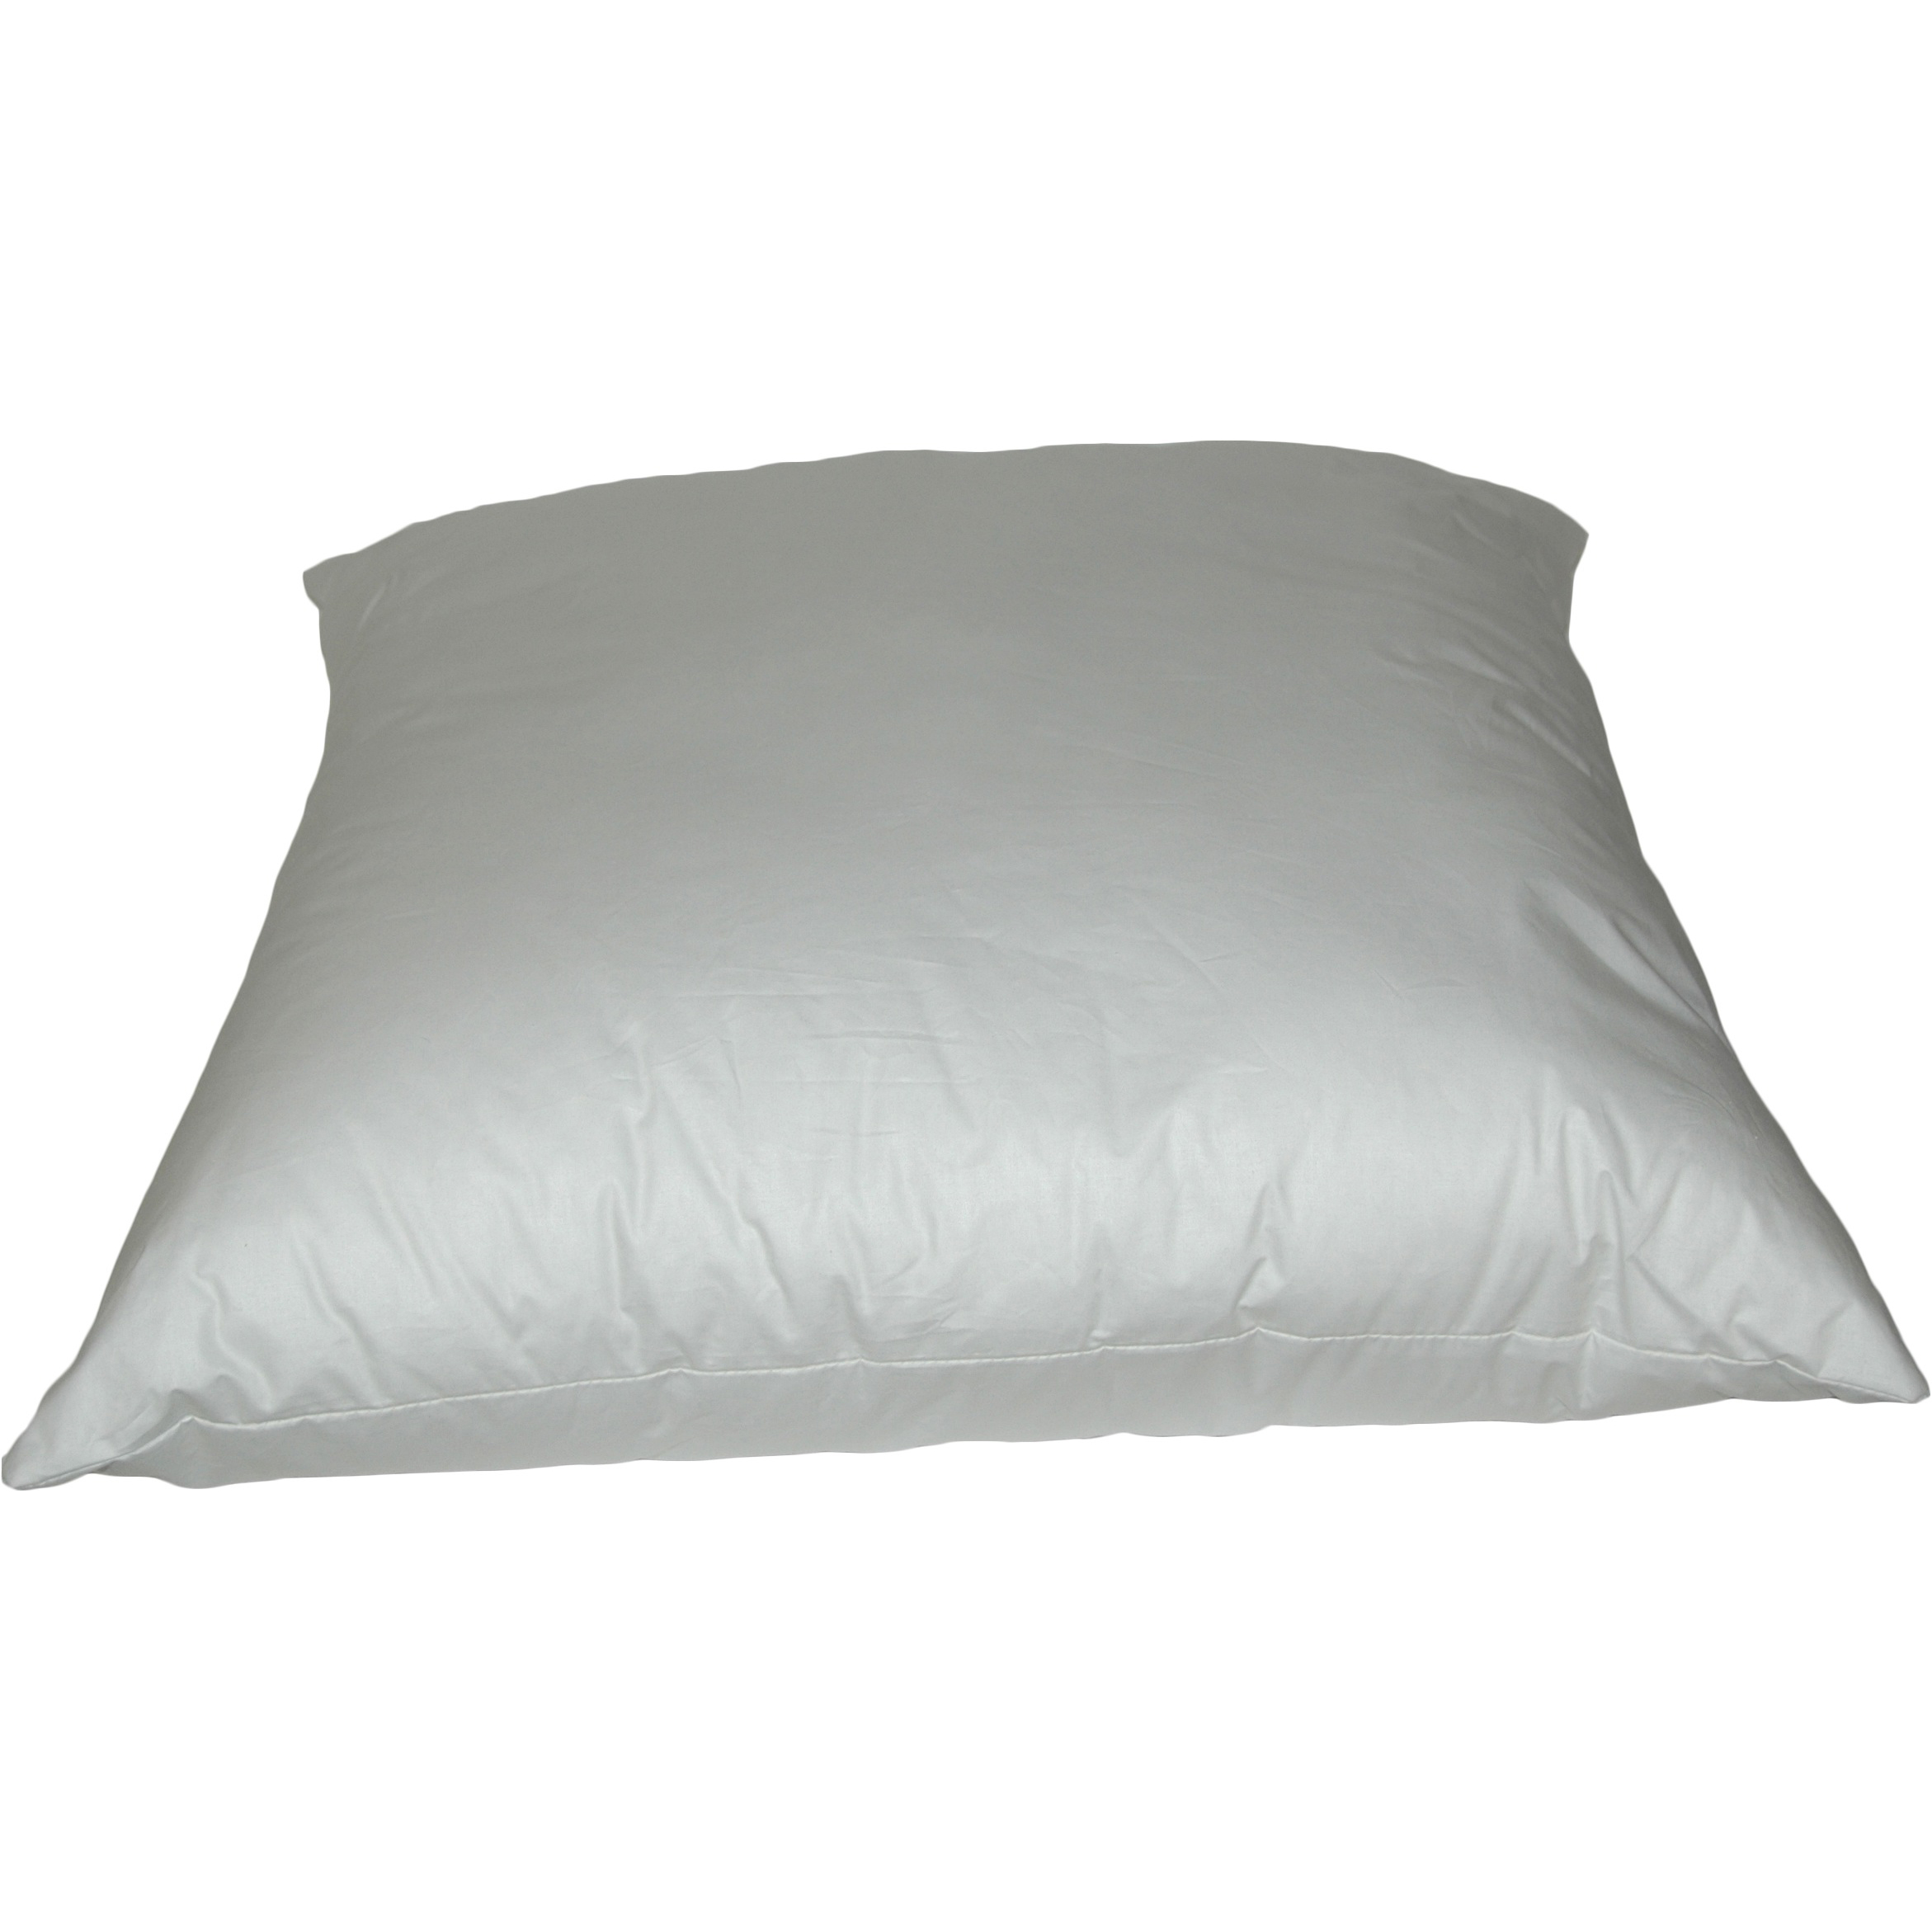 Rectangular K-Fiber Pillows 20x36 inch